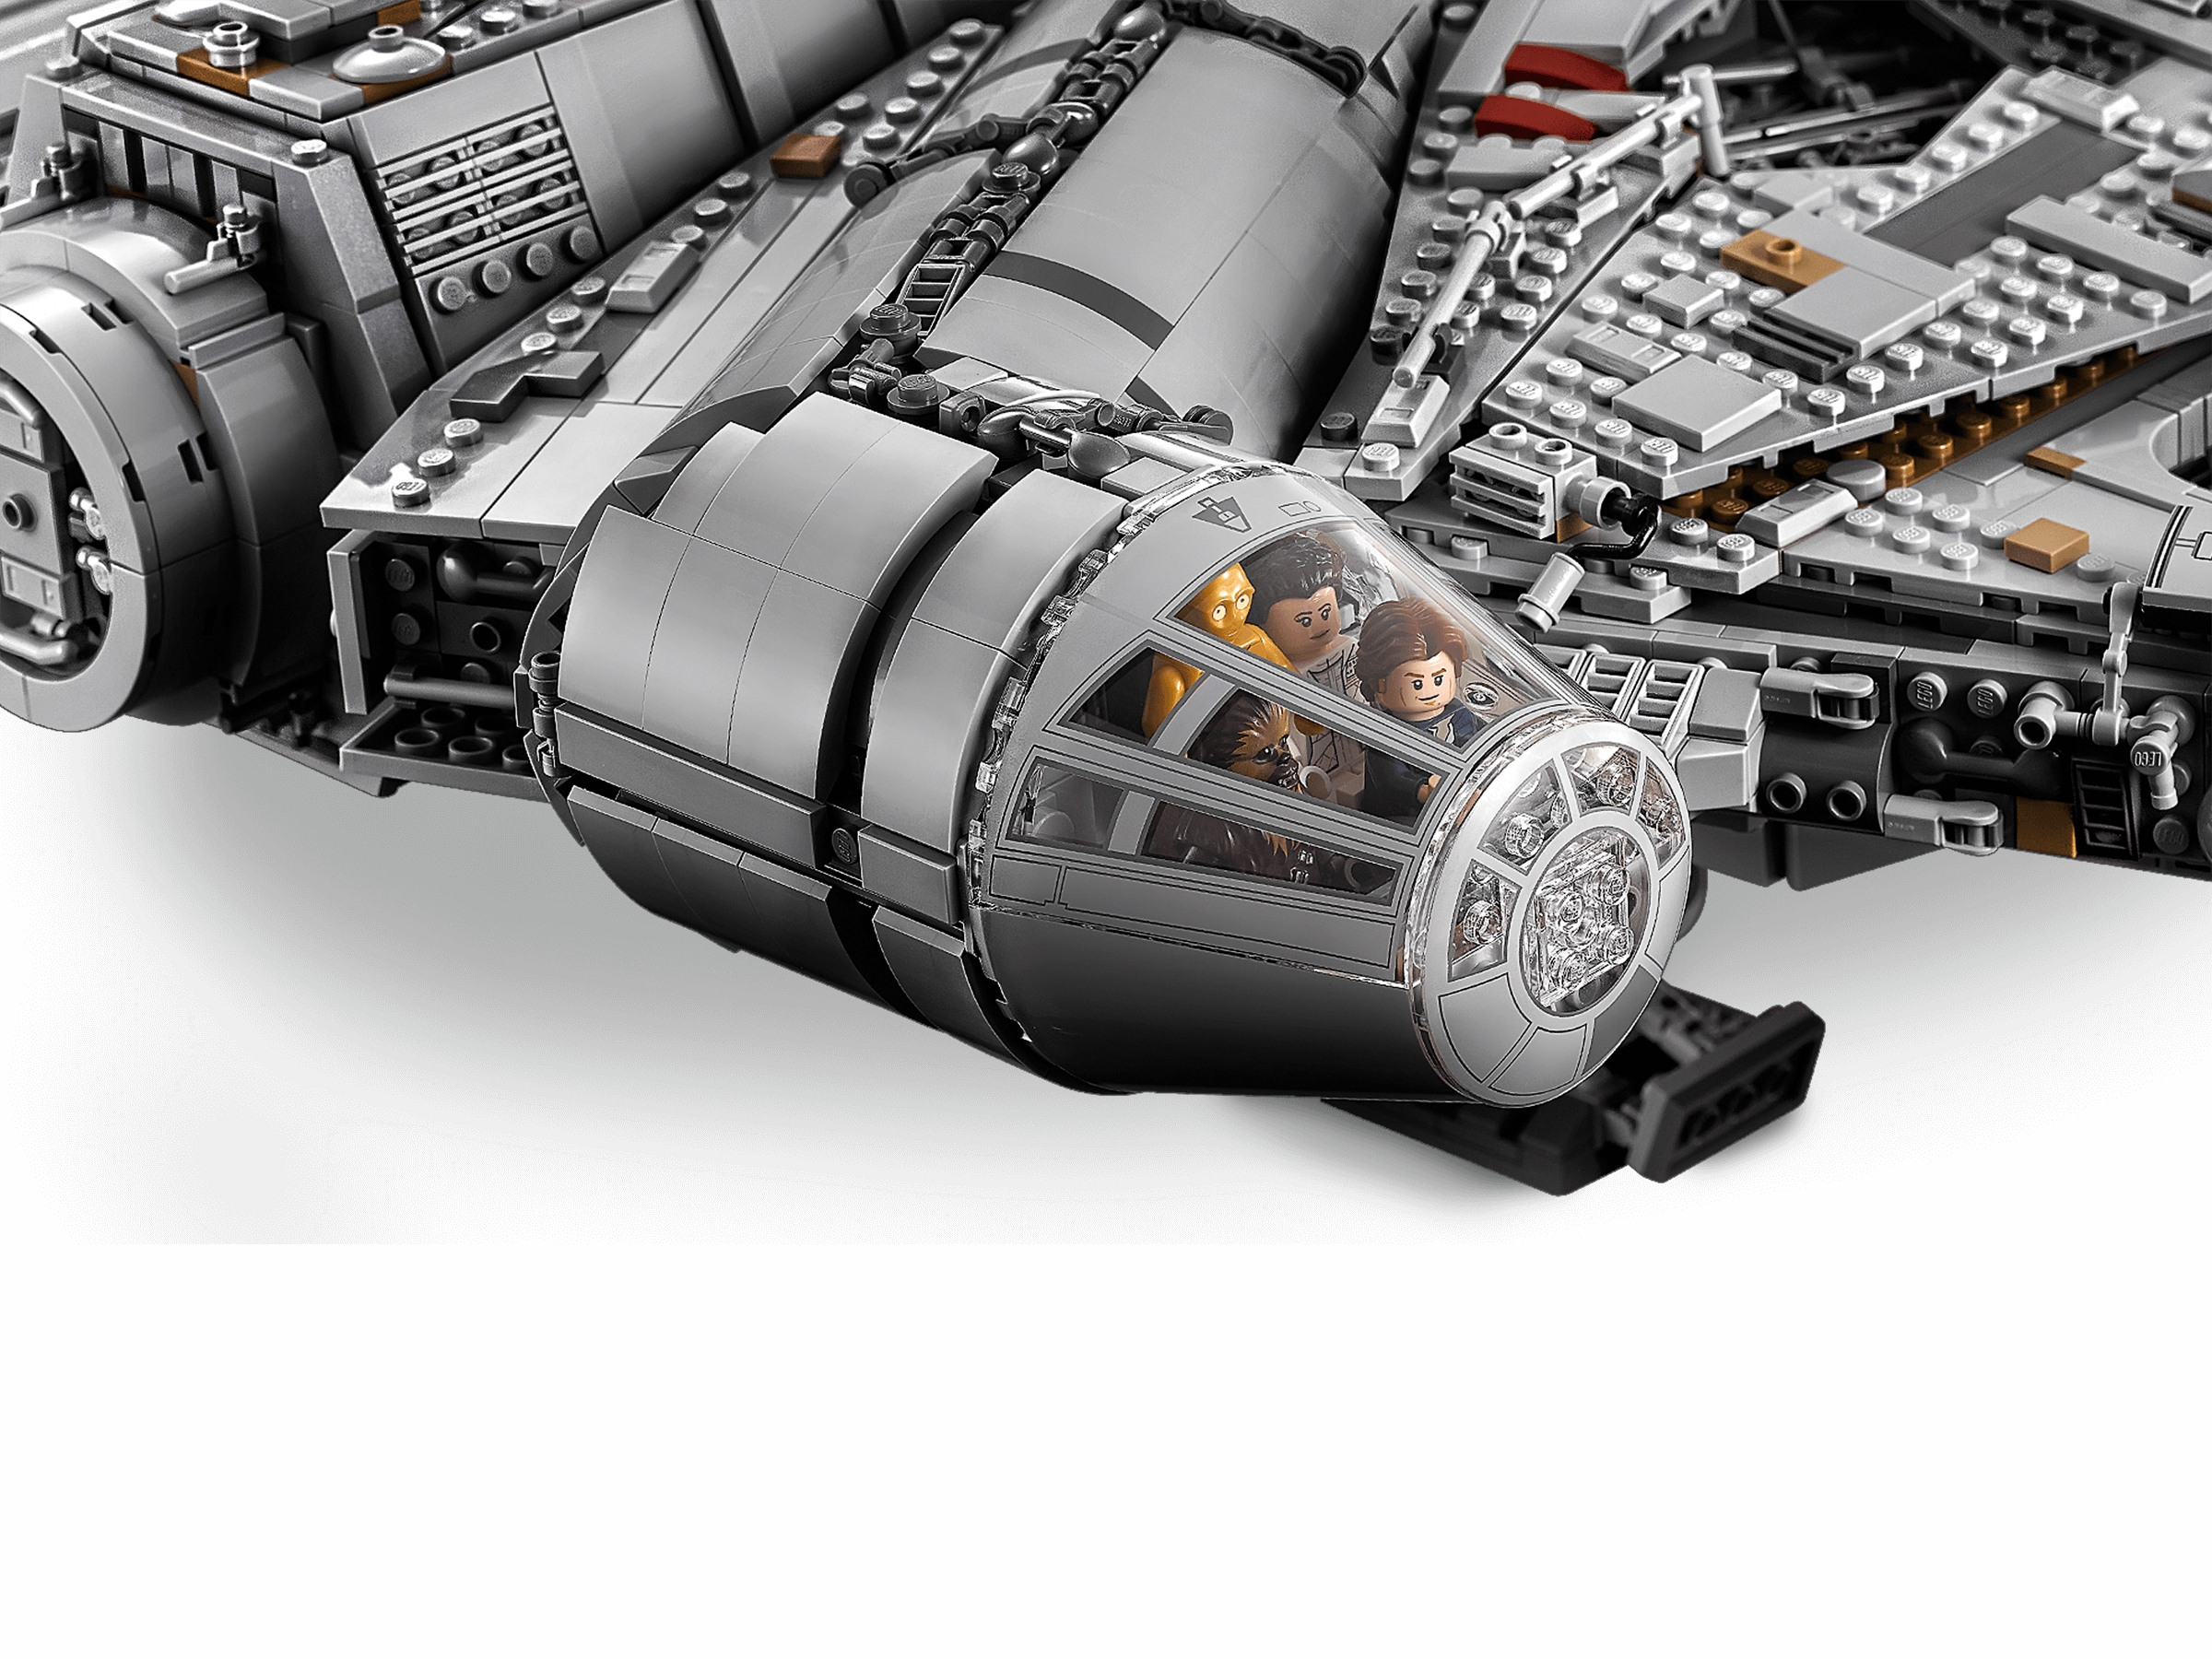 LEGO Star Wars: Millennium Falcon micro set 32pcs (FalconFoil911949)